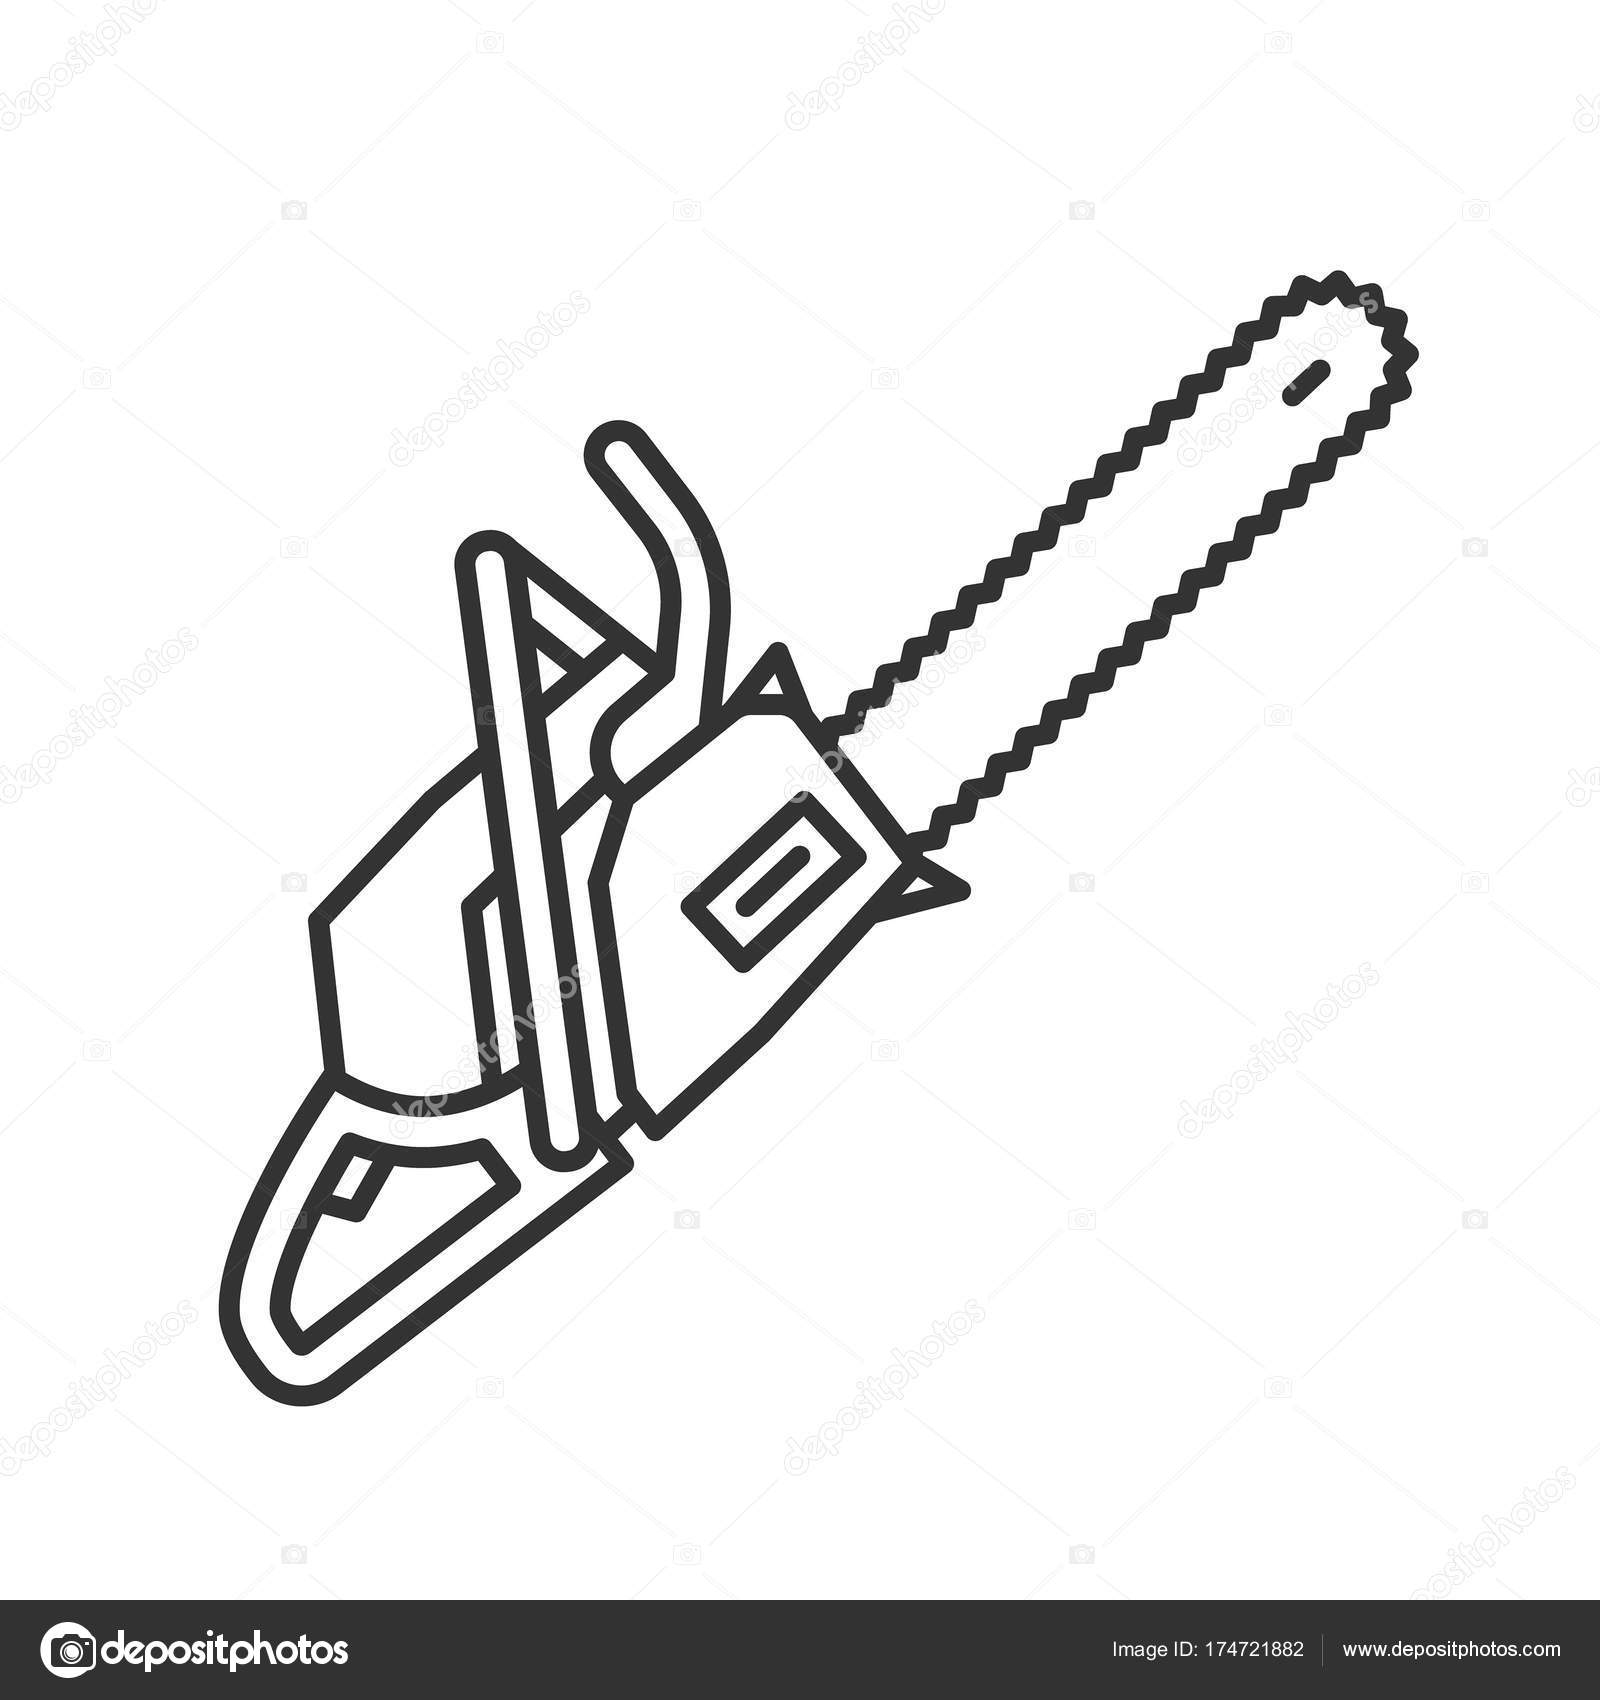 Motosserra - ícones de construção e ferramentas grátis